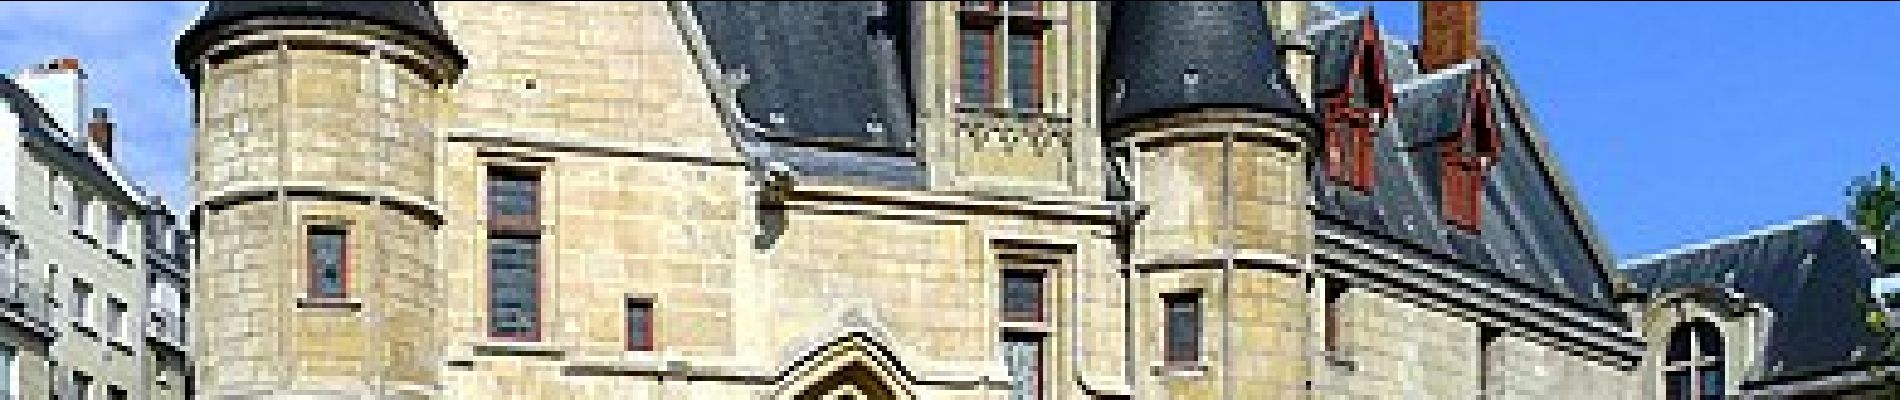 POI Paris - Hotel des archevêques de Sens - Photo